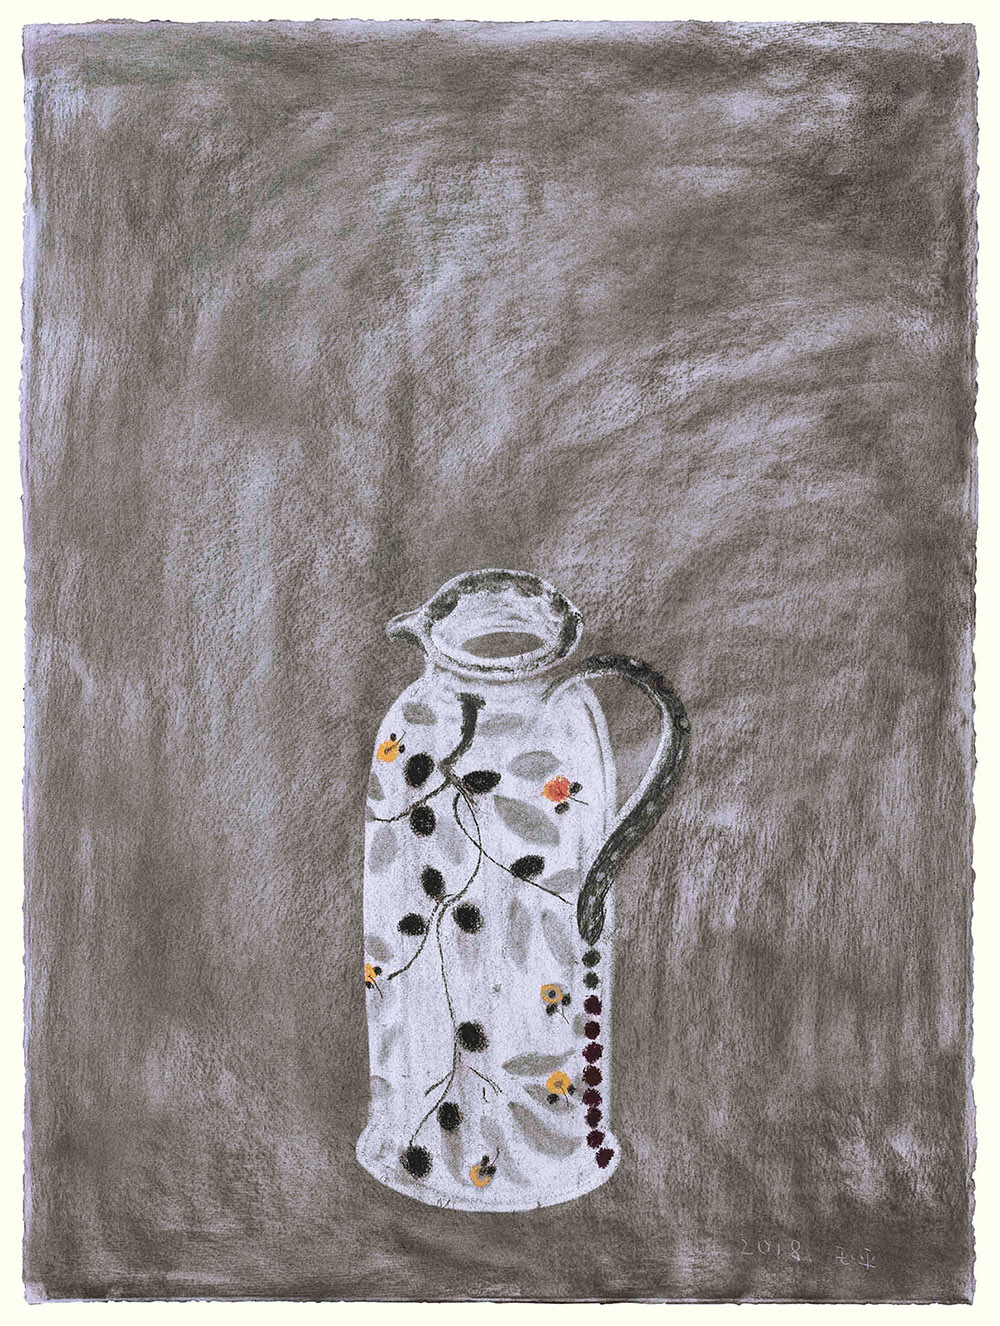 Wang Yu Ping, Senza titolo, 2018, carboncino su carta, cm 76x56